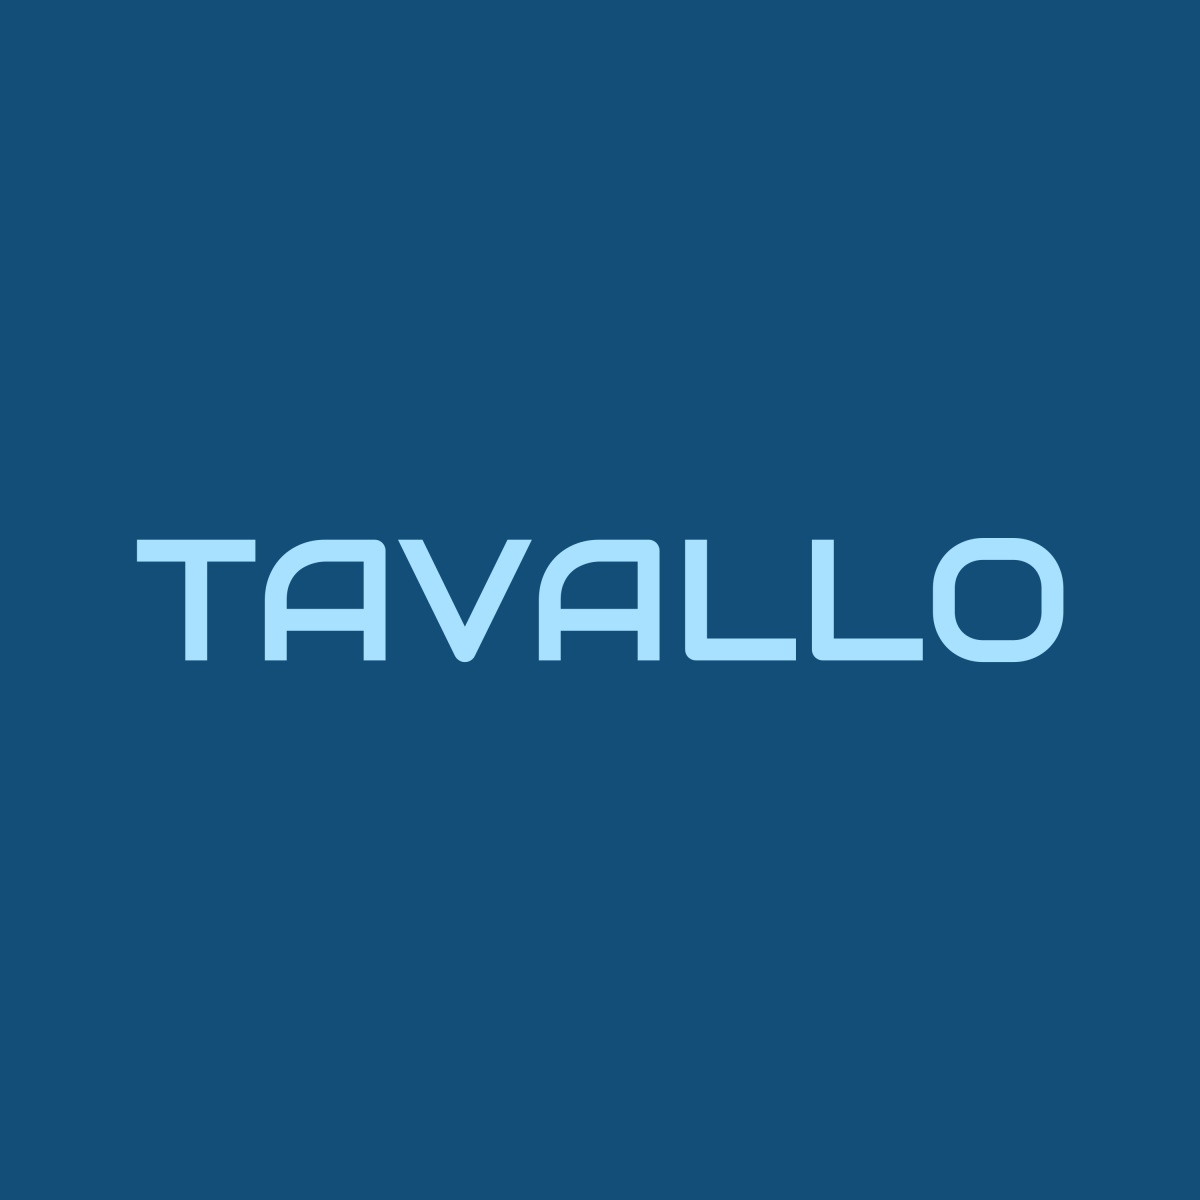 tavallo logo social